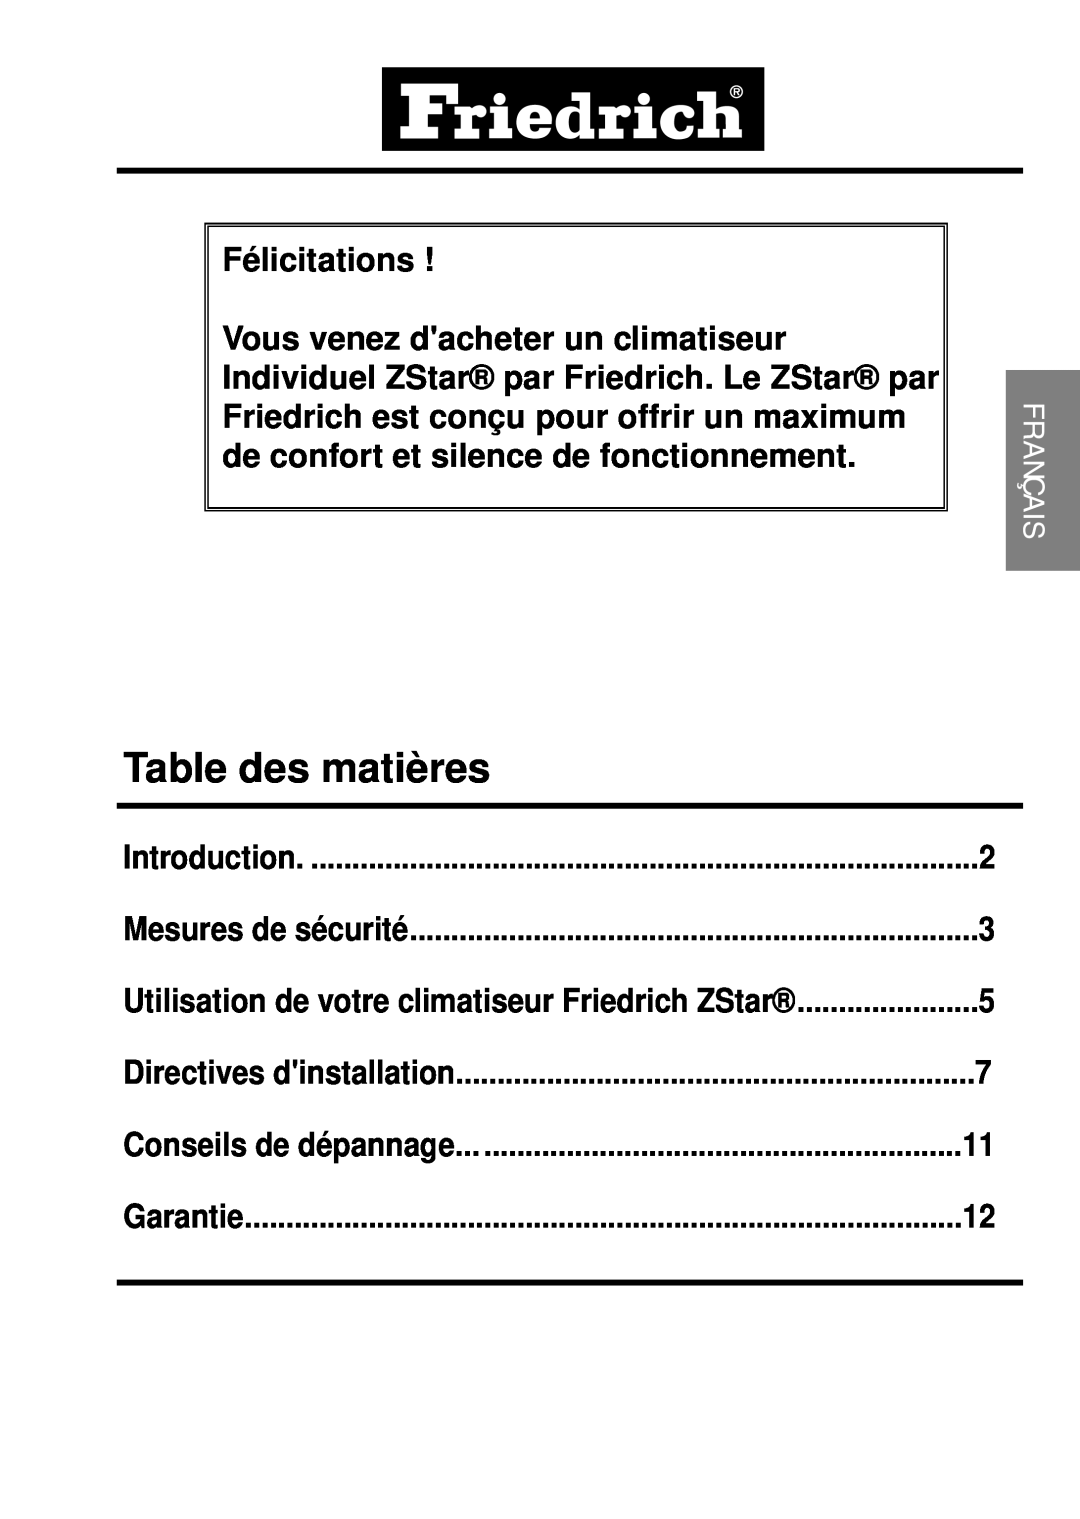 Friedrich ZStar Table des matières, Félicitations, Mesures de sécurité, Directives dinstallation, Conseils de dépannage 